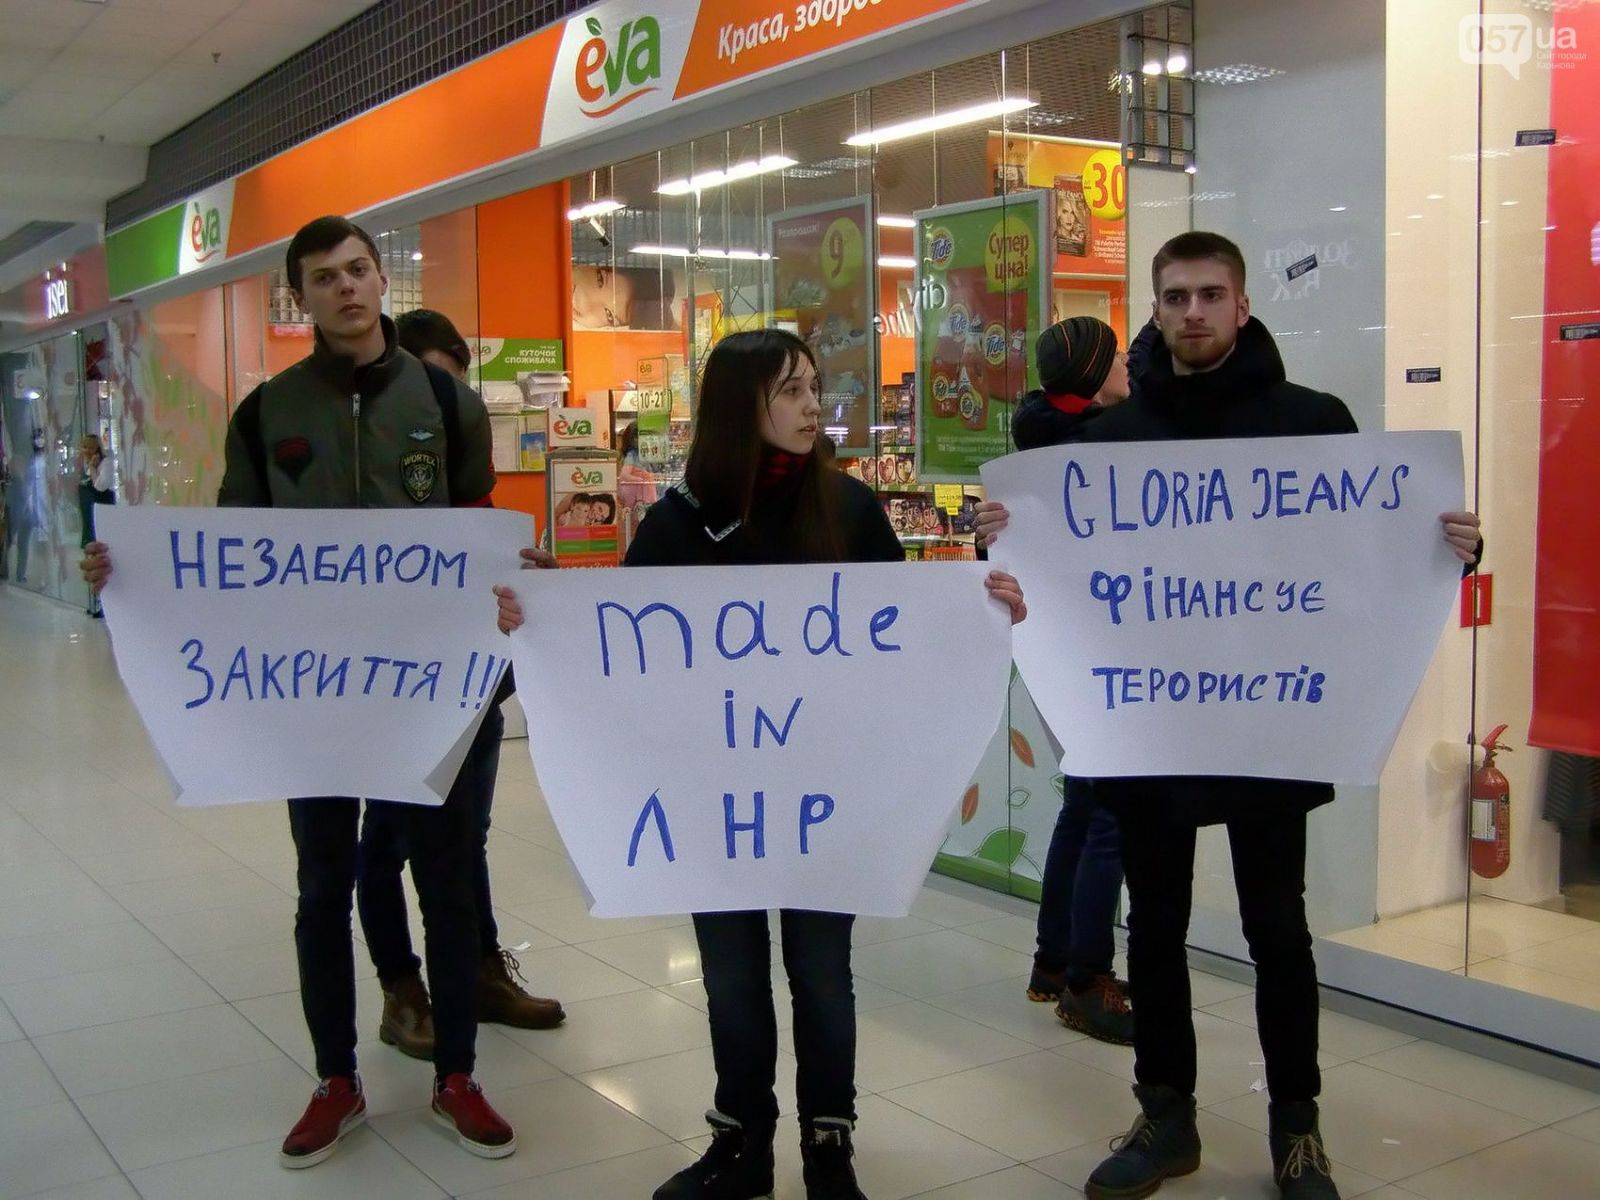 Пикет магазина в Харькове: свиная кровь и потасовка (фото, видео)